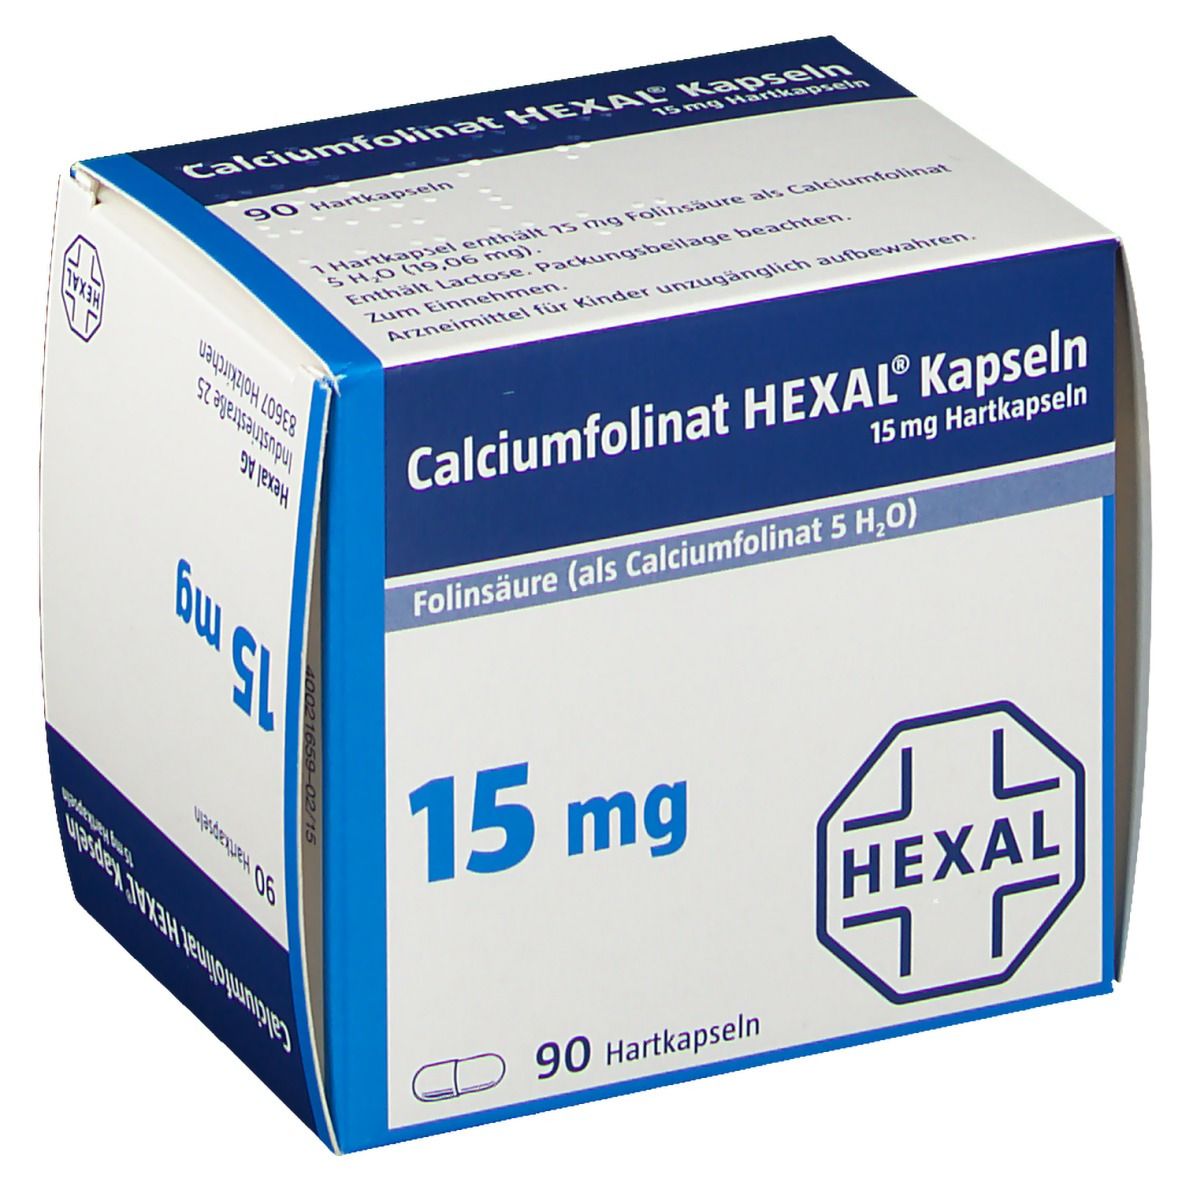 Calciumfolinat HEXAL® Kapseln 15 mg